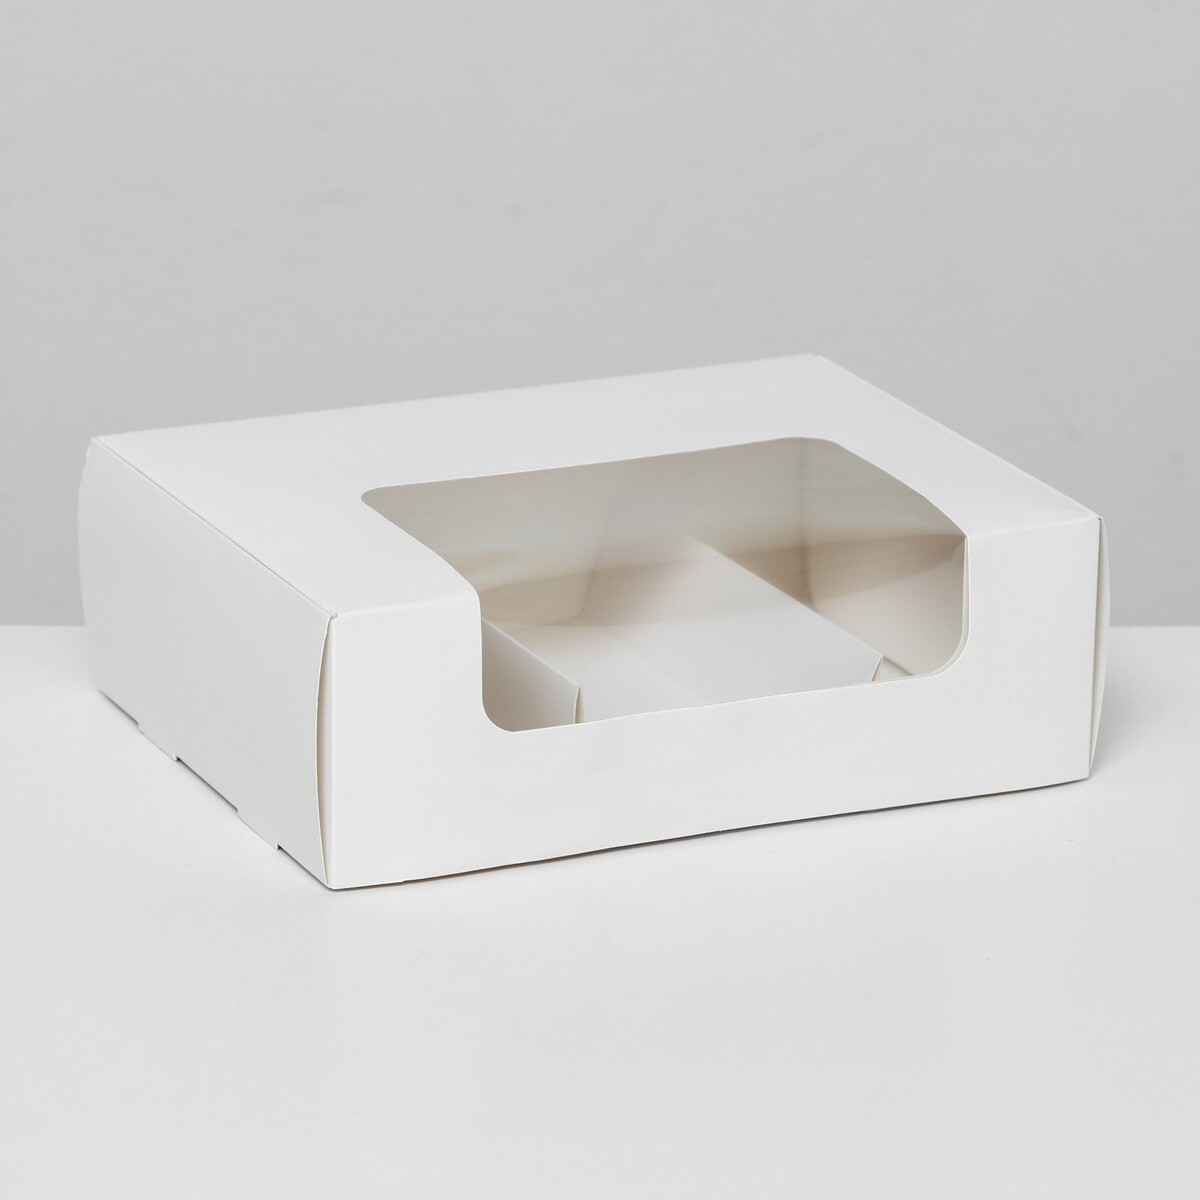 Коробка складная, под 3 эклера, белая, 20 x 15 x 6 см